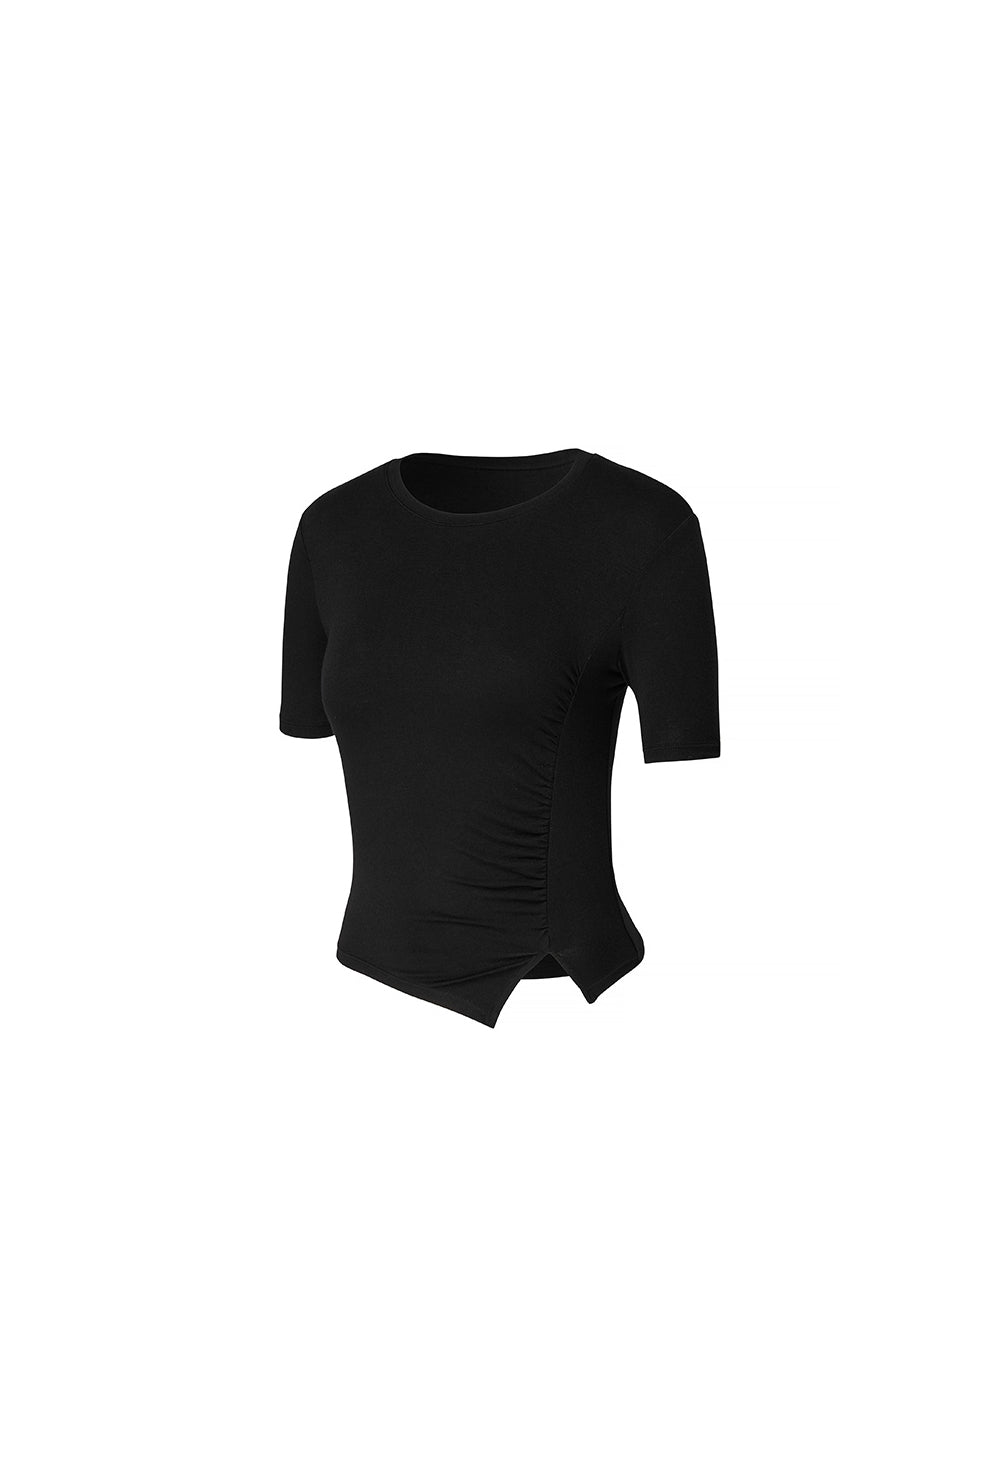 Side Shirring Unbalance Short Sleeve - Black